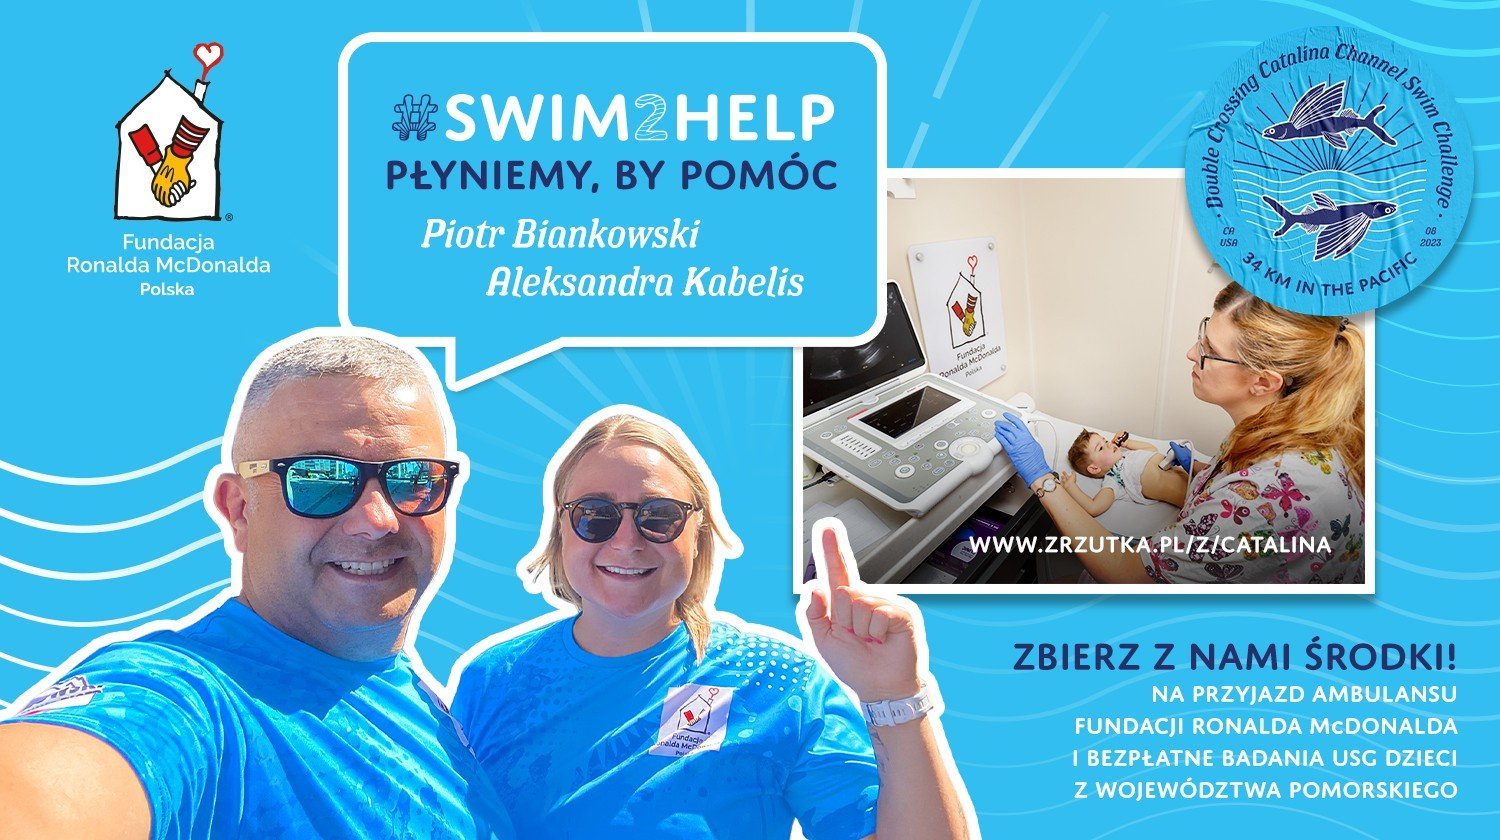 Pływacy ekstremalni pochodzący z Gdyni zbierają przy okazji środki na dziecięcą profilaktykę nowotworową, fot. mat. prasowe